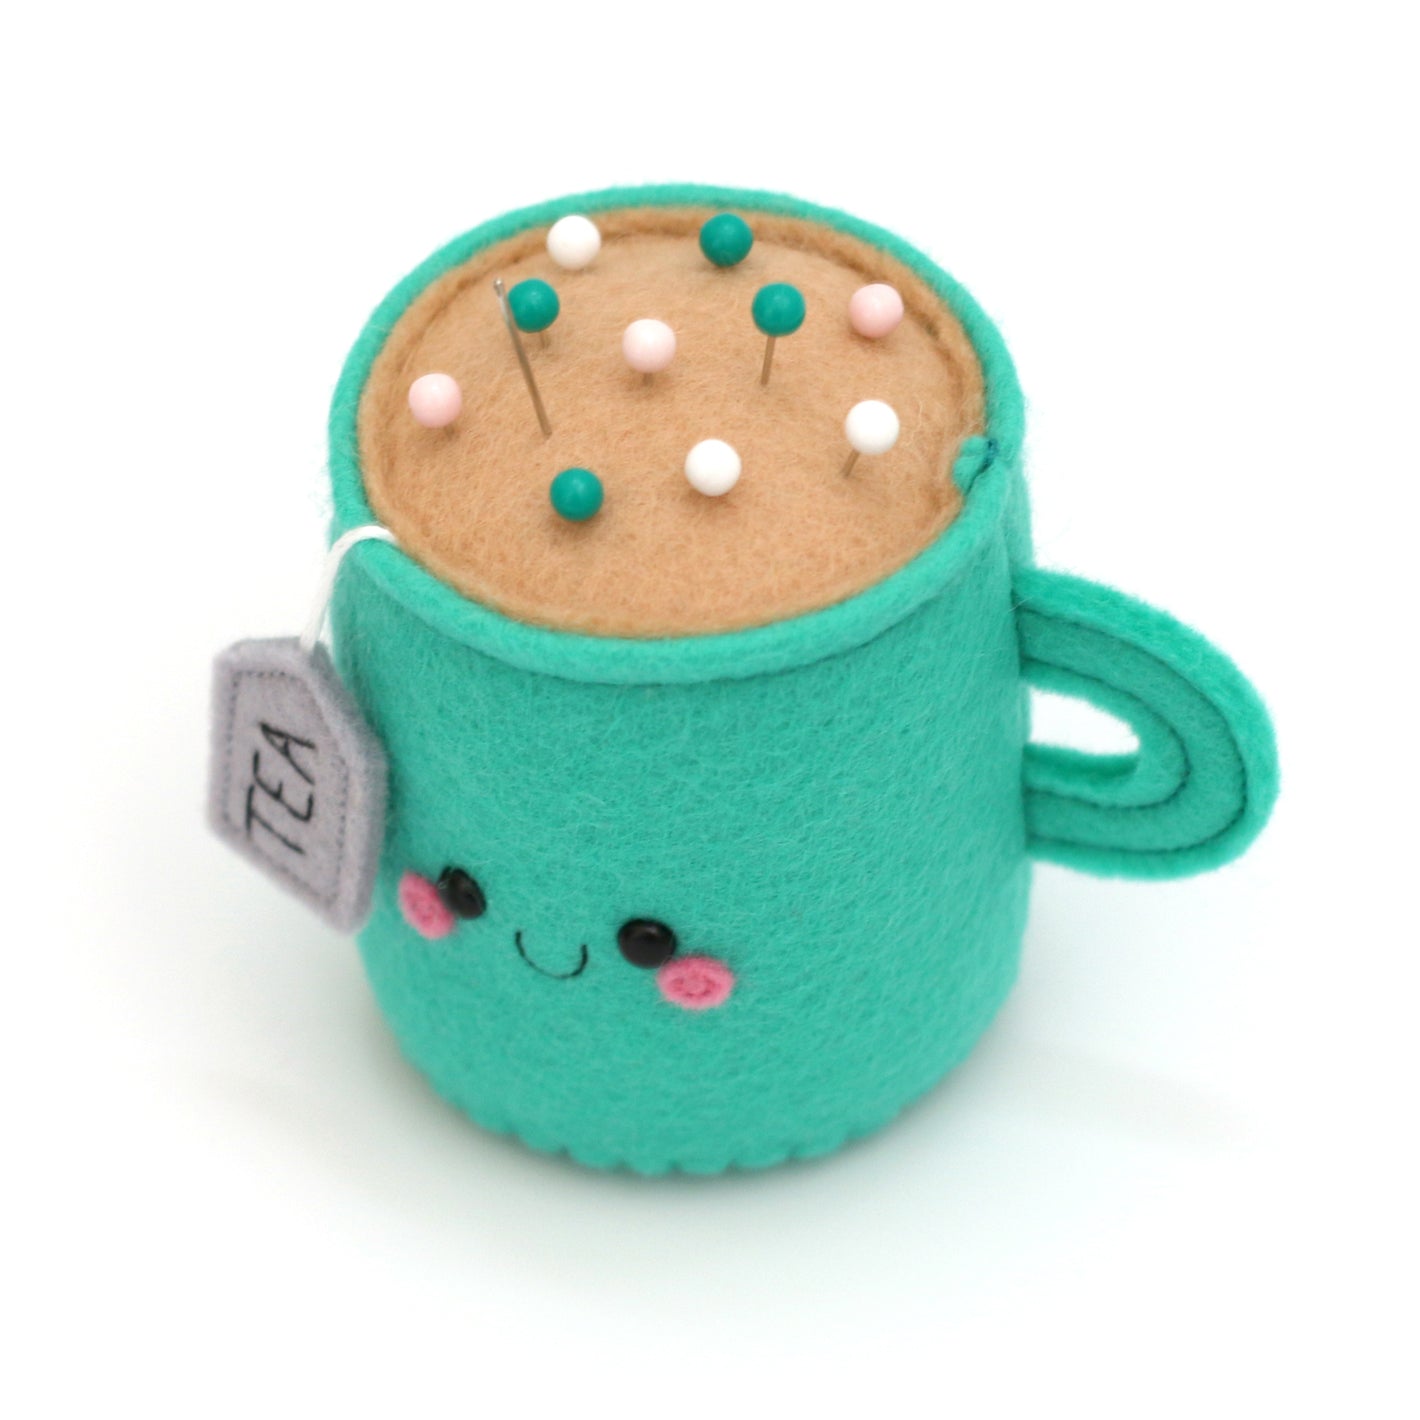 Cute teacup pincushion